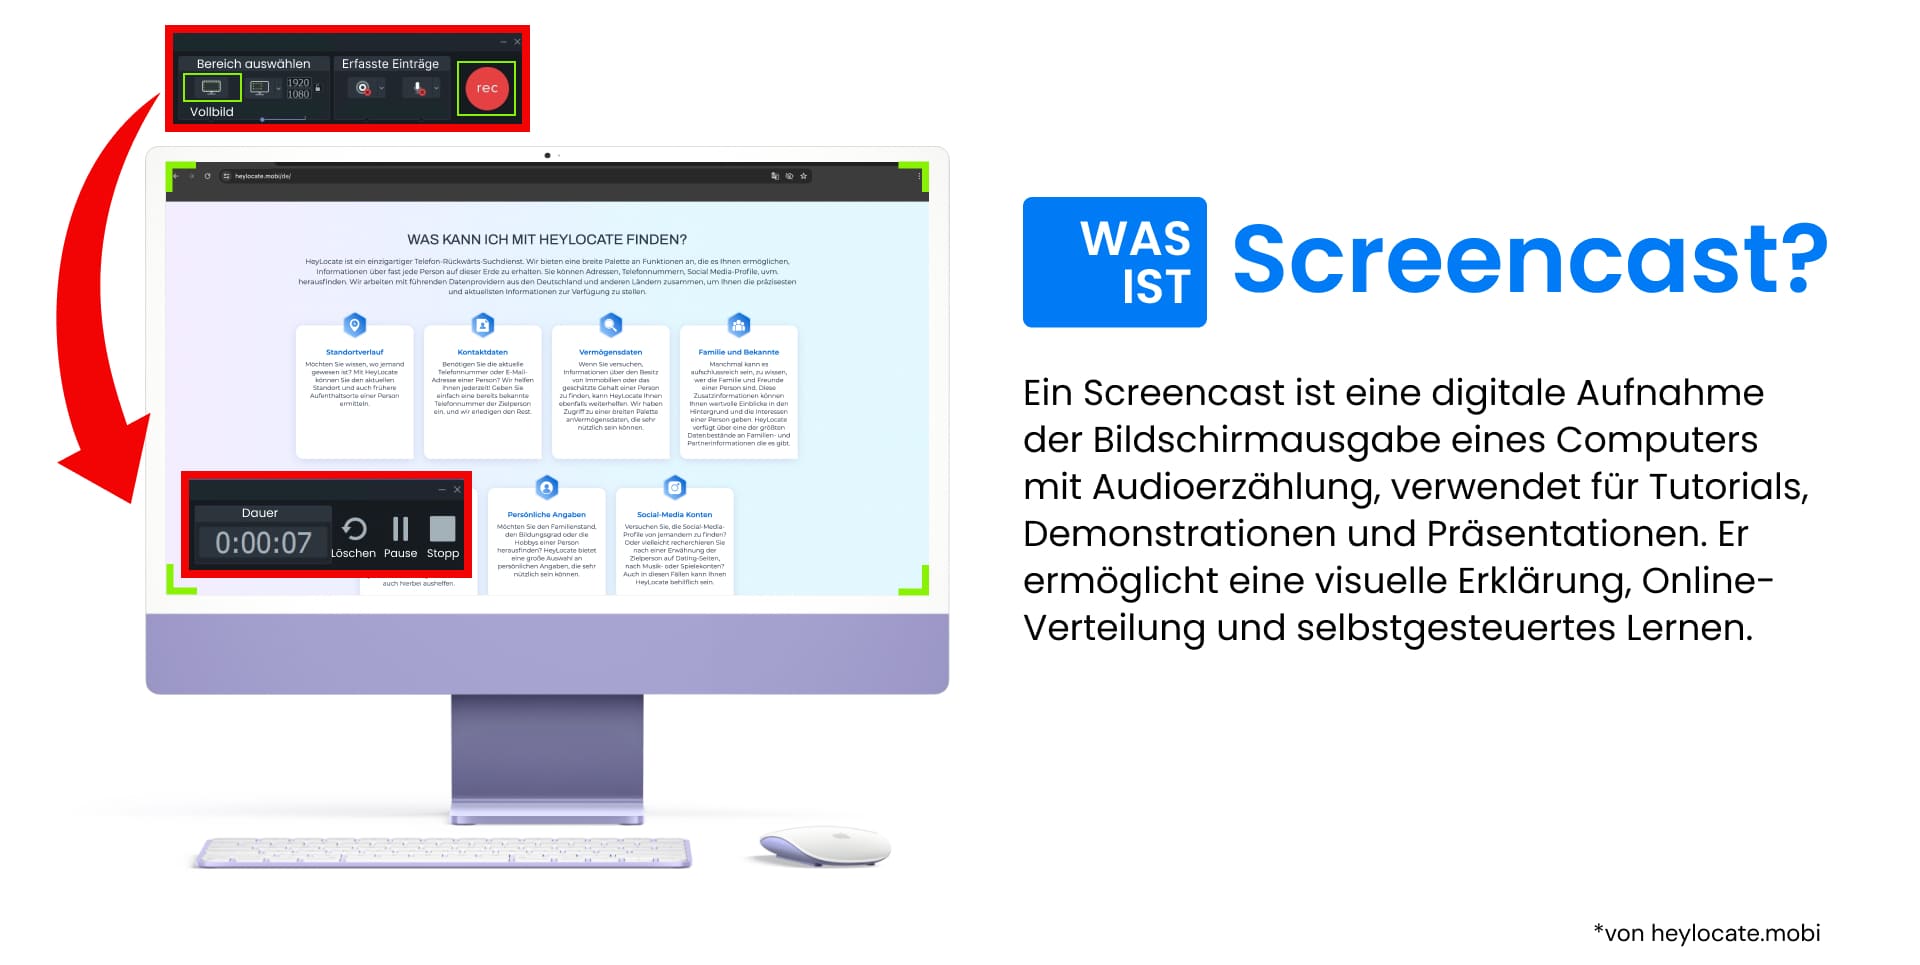 Das Bild zeigt einen Computer mit einer Screencasting-Anwendungsoberfläche und die Definition eines Screenshots.